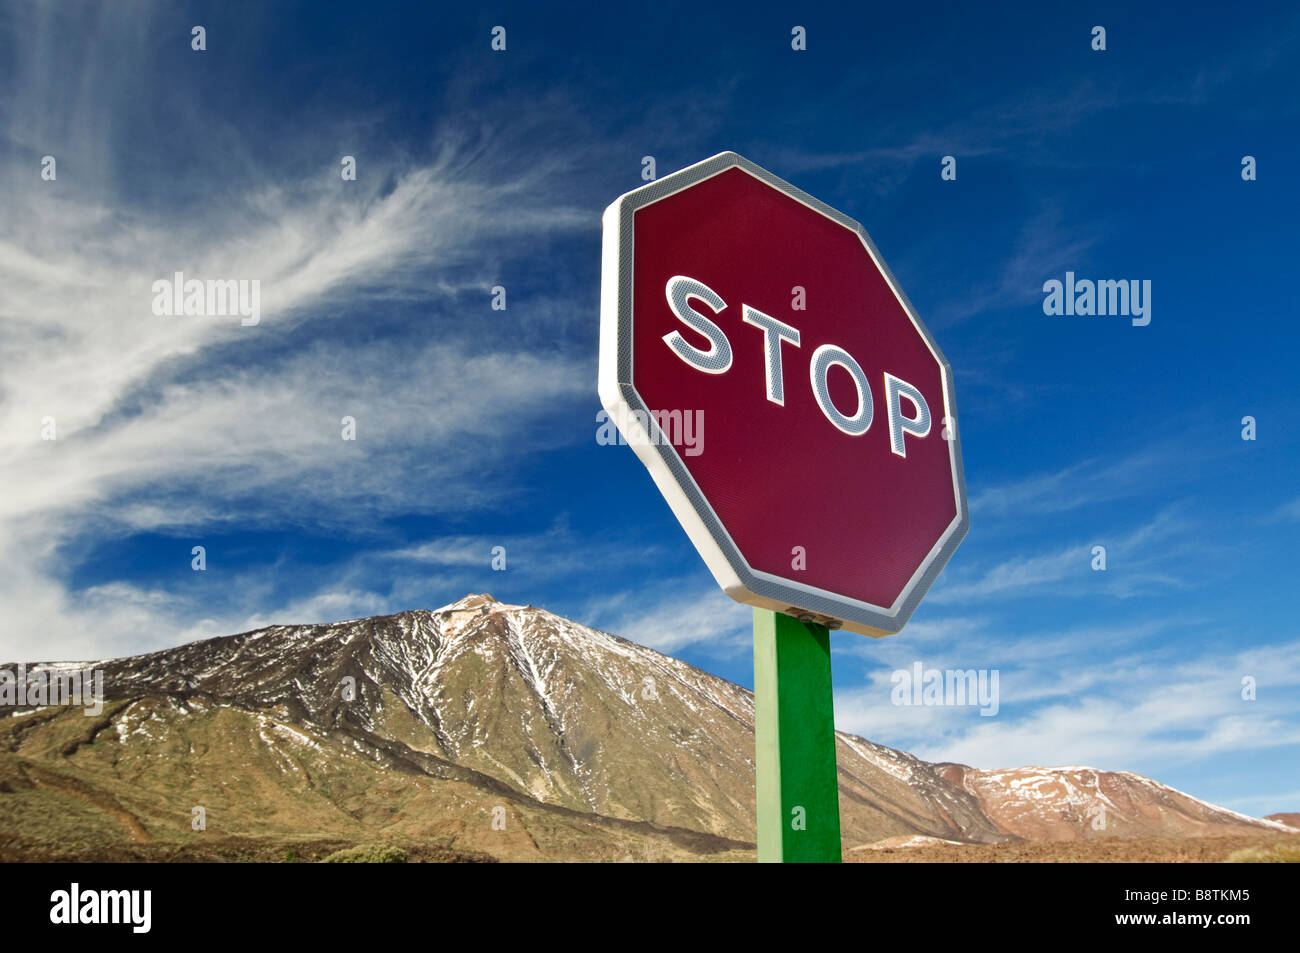 Inscrivez-vous sur 'STOP' avec montagne derrière représentant un avertissement symbolique à l'égard des problèmes environnementaux tels que le changement climatique Banque D'Images